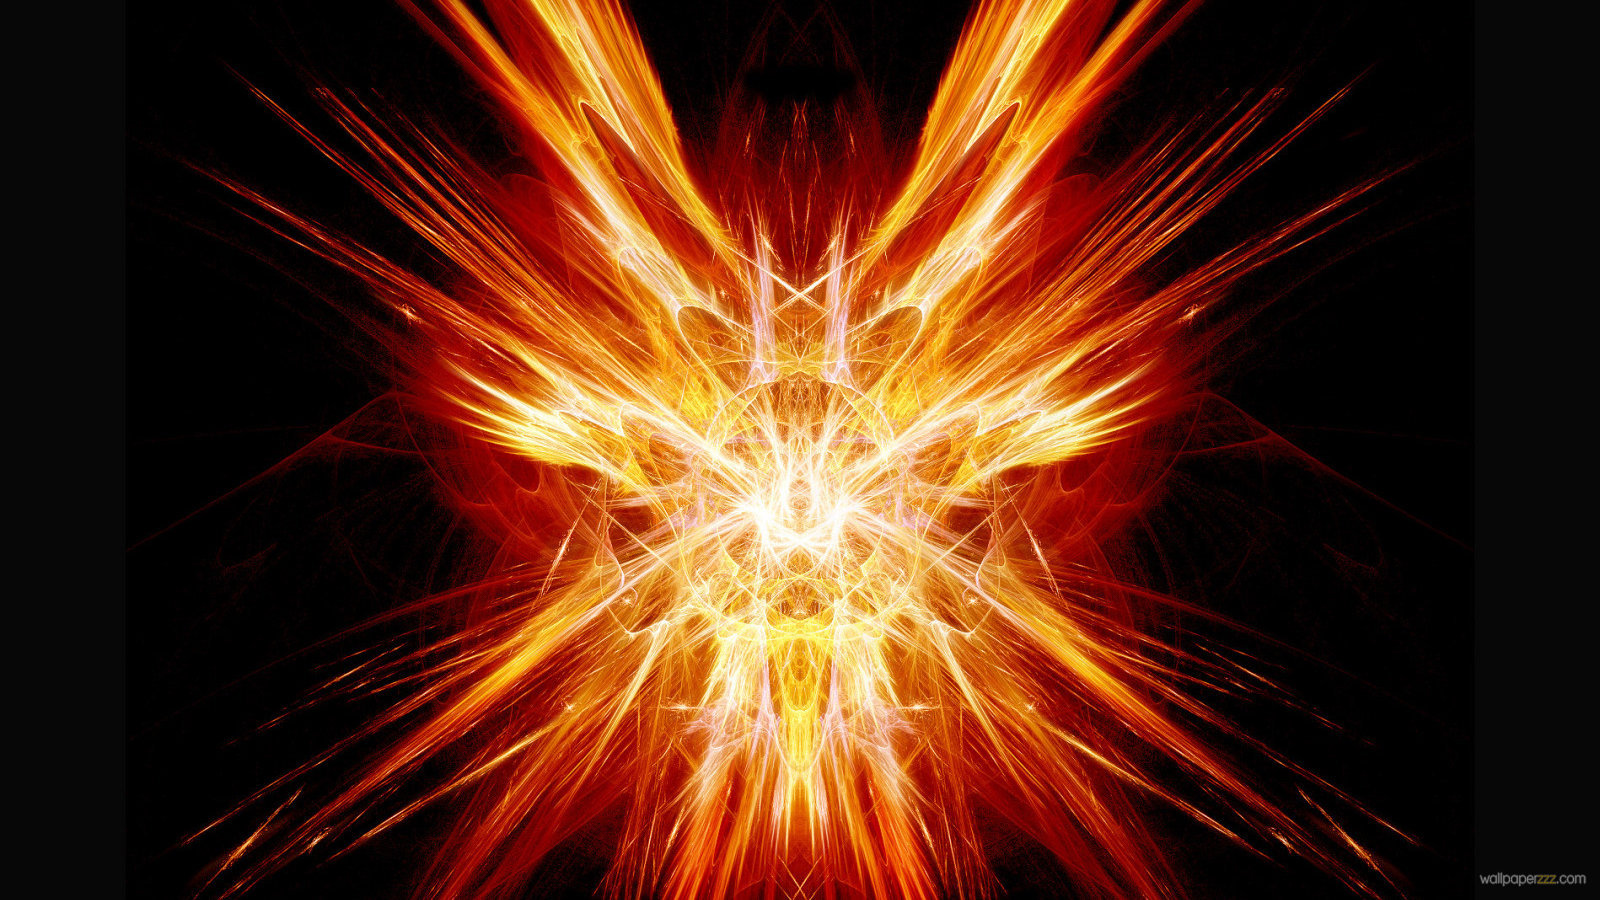 fonds d'écran flash cool,orange,rouge,flamme,lumière,art fractal